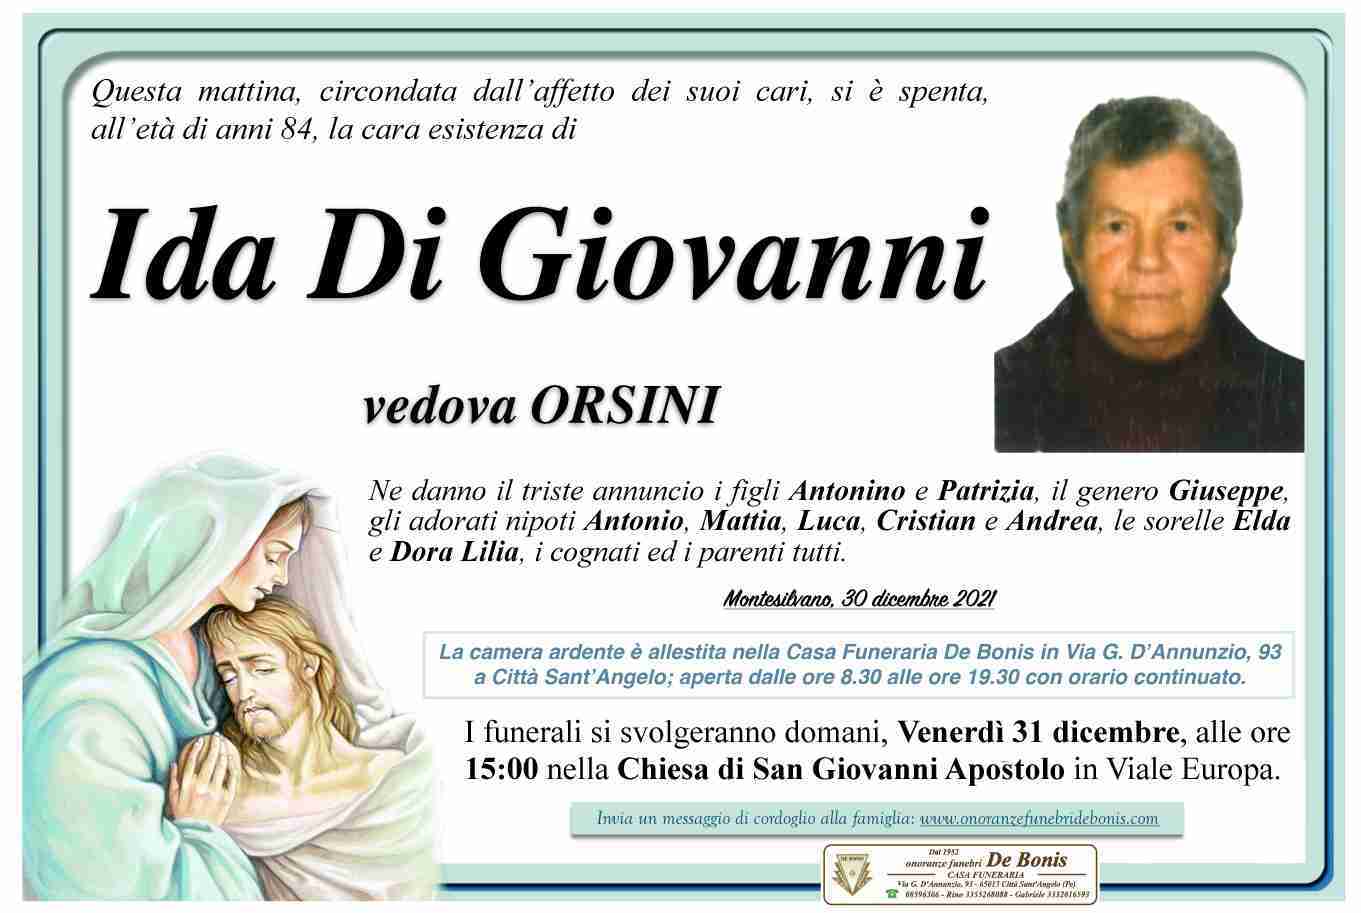 Ida Di Giovanni